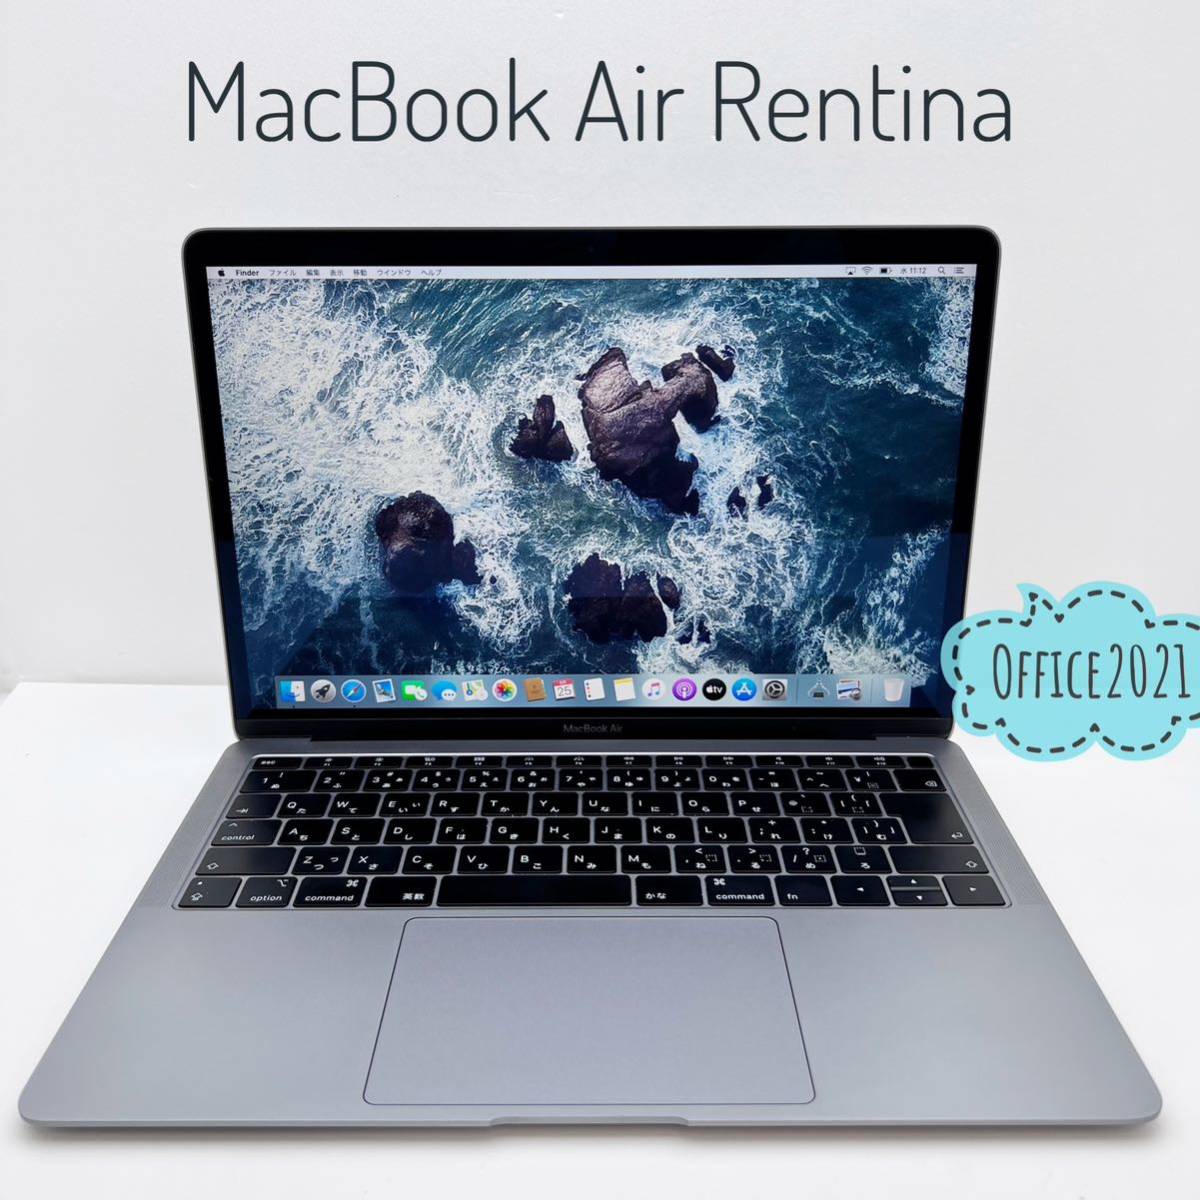 ヤフオク! - MacBook Air2018 13inch Rentina Office2021付き